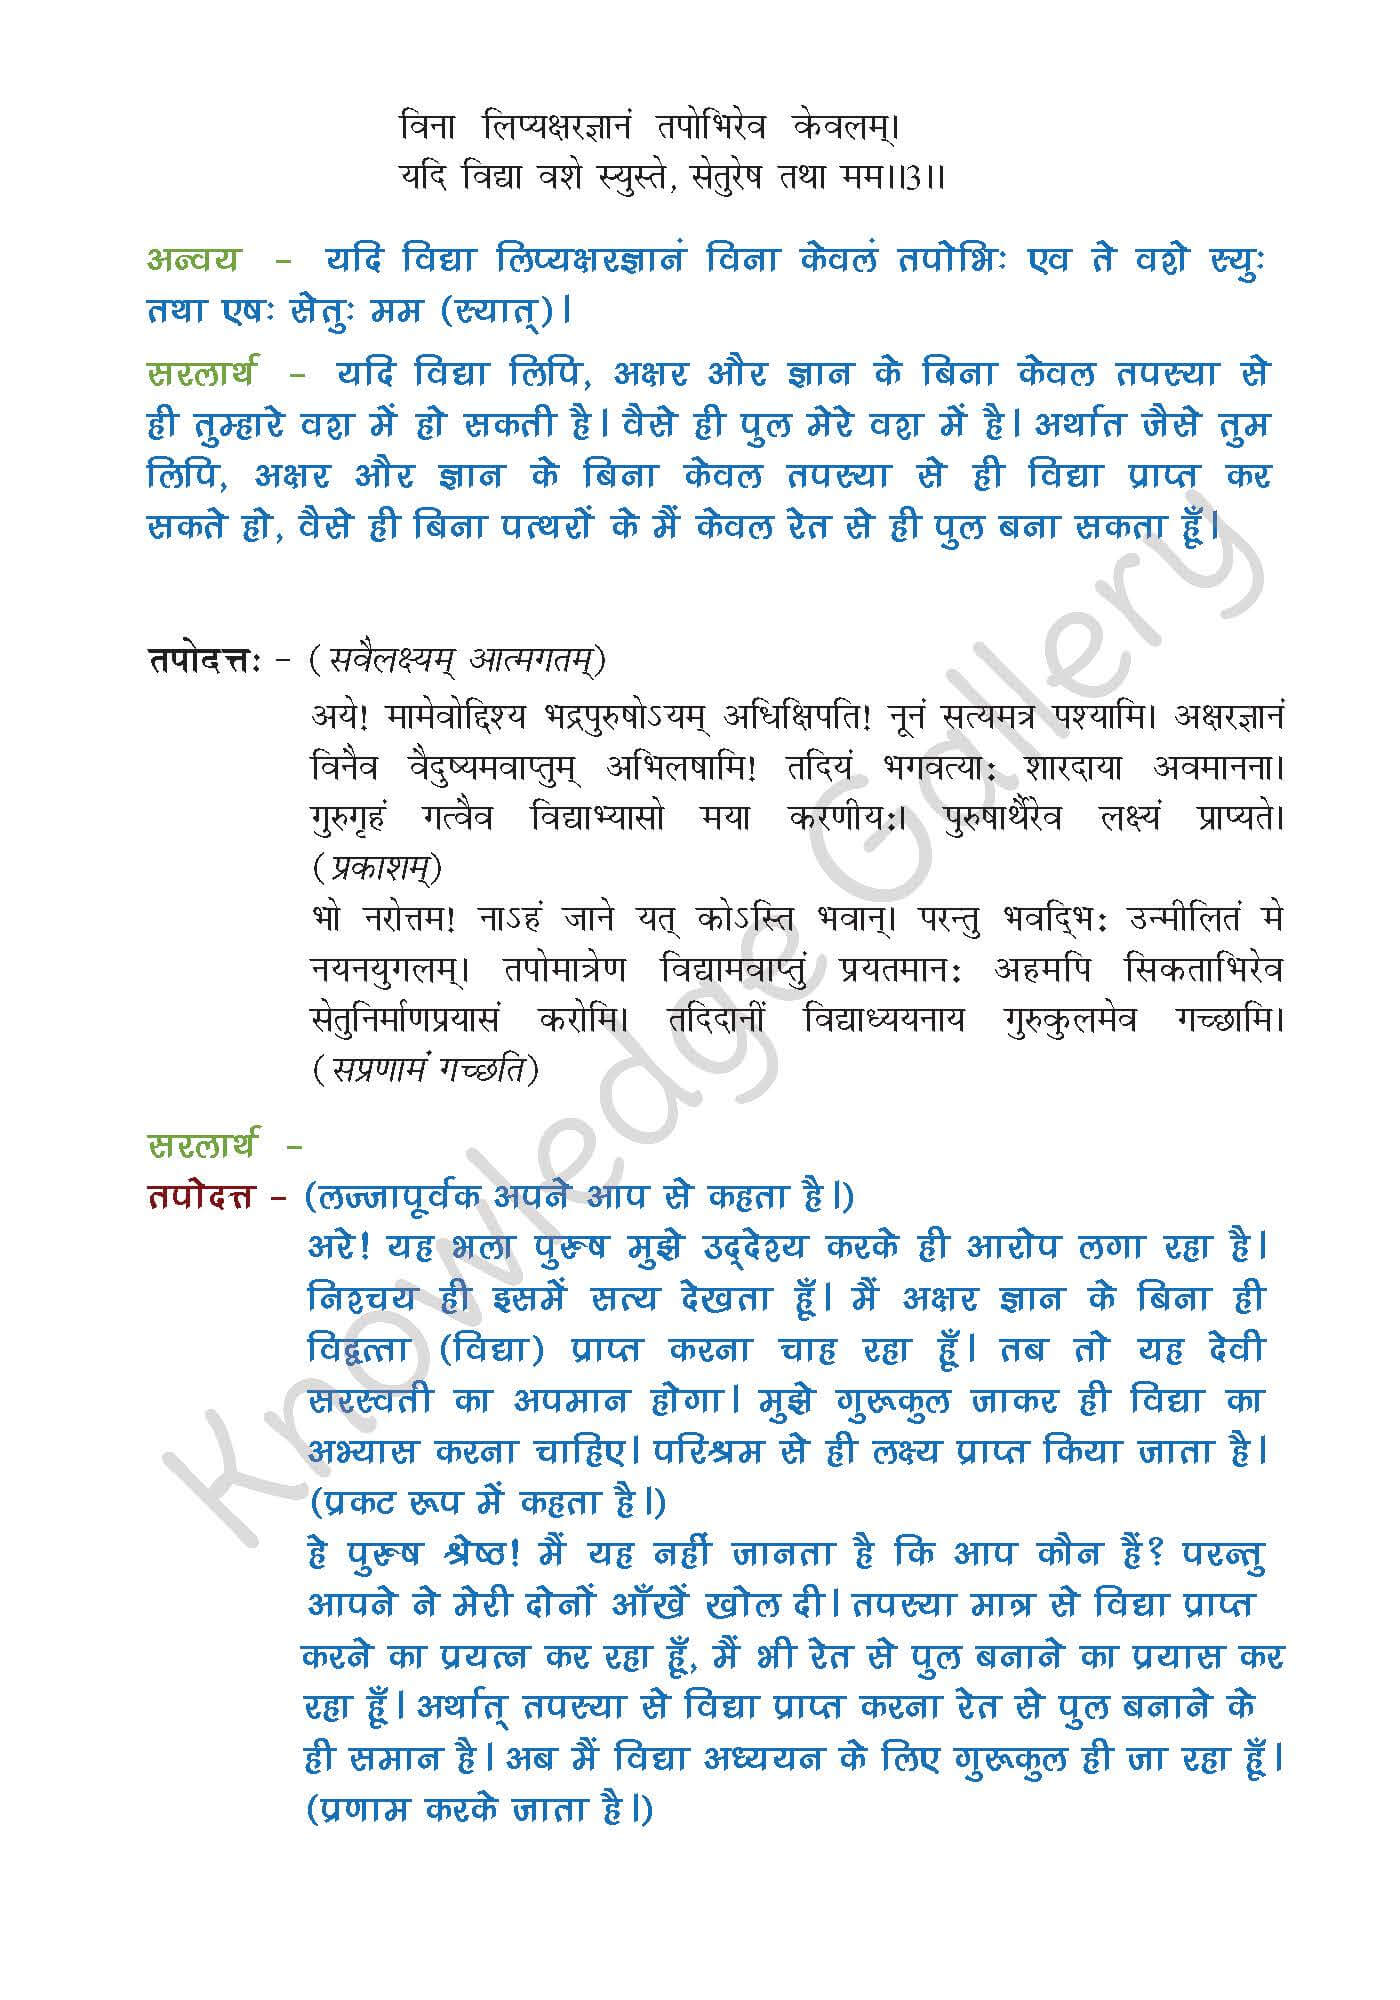 NCERT Solution For Class 9 Sanskrit Chapter 7 part 4